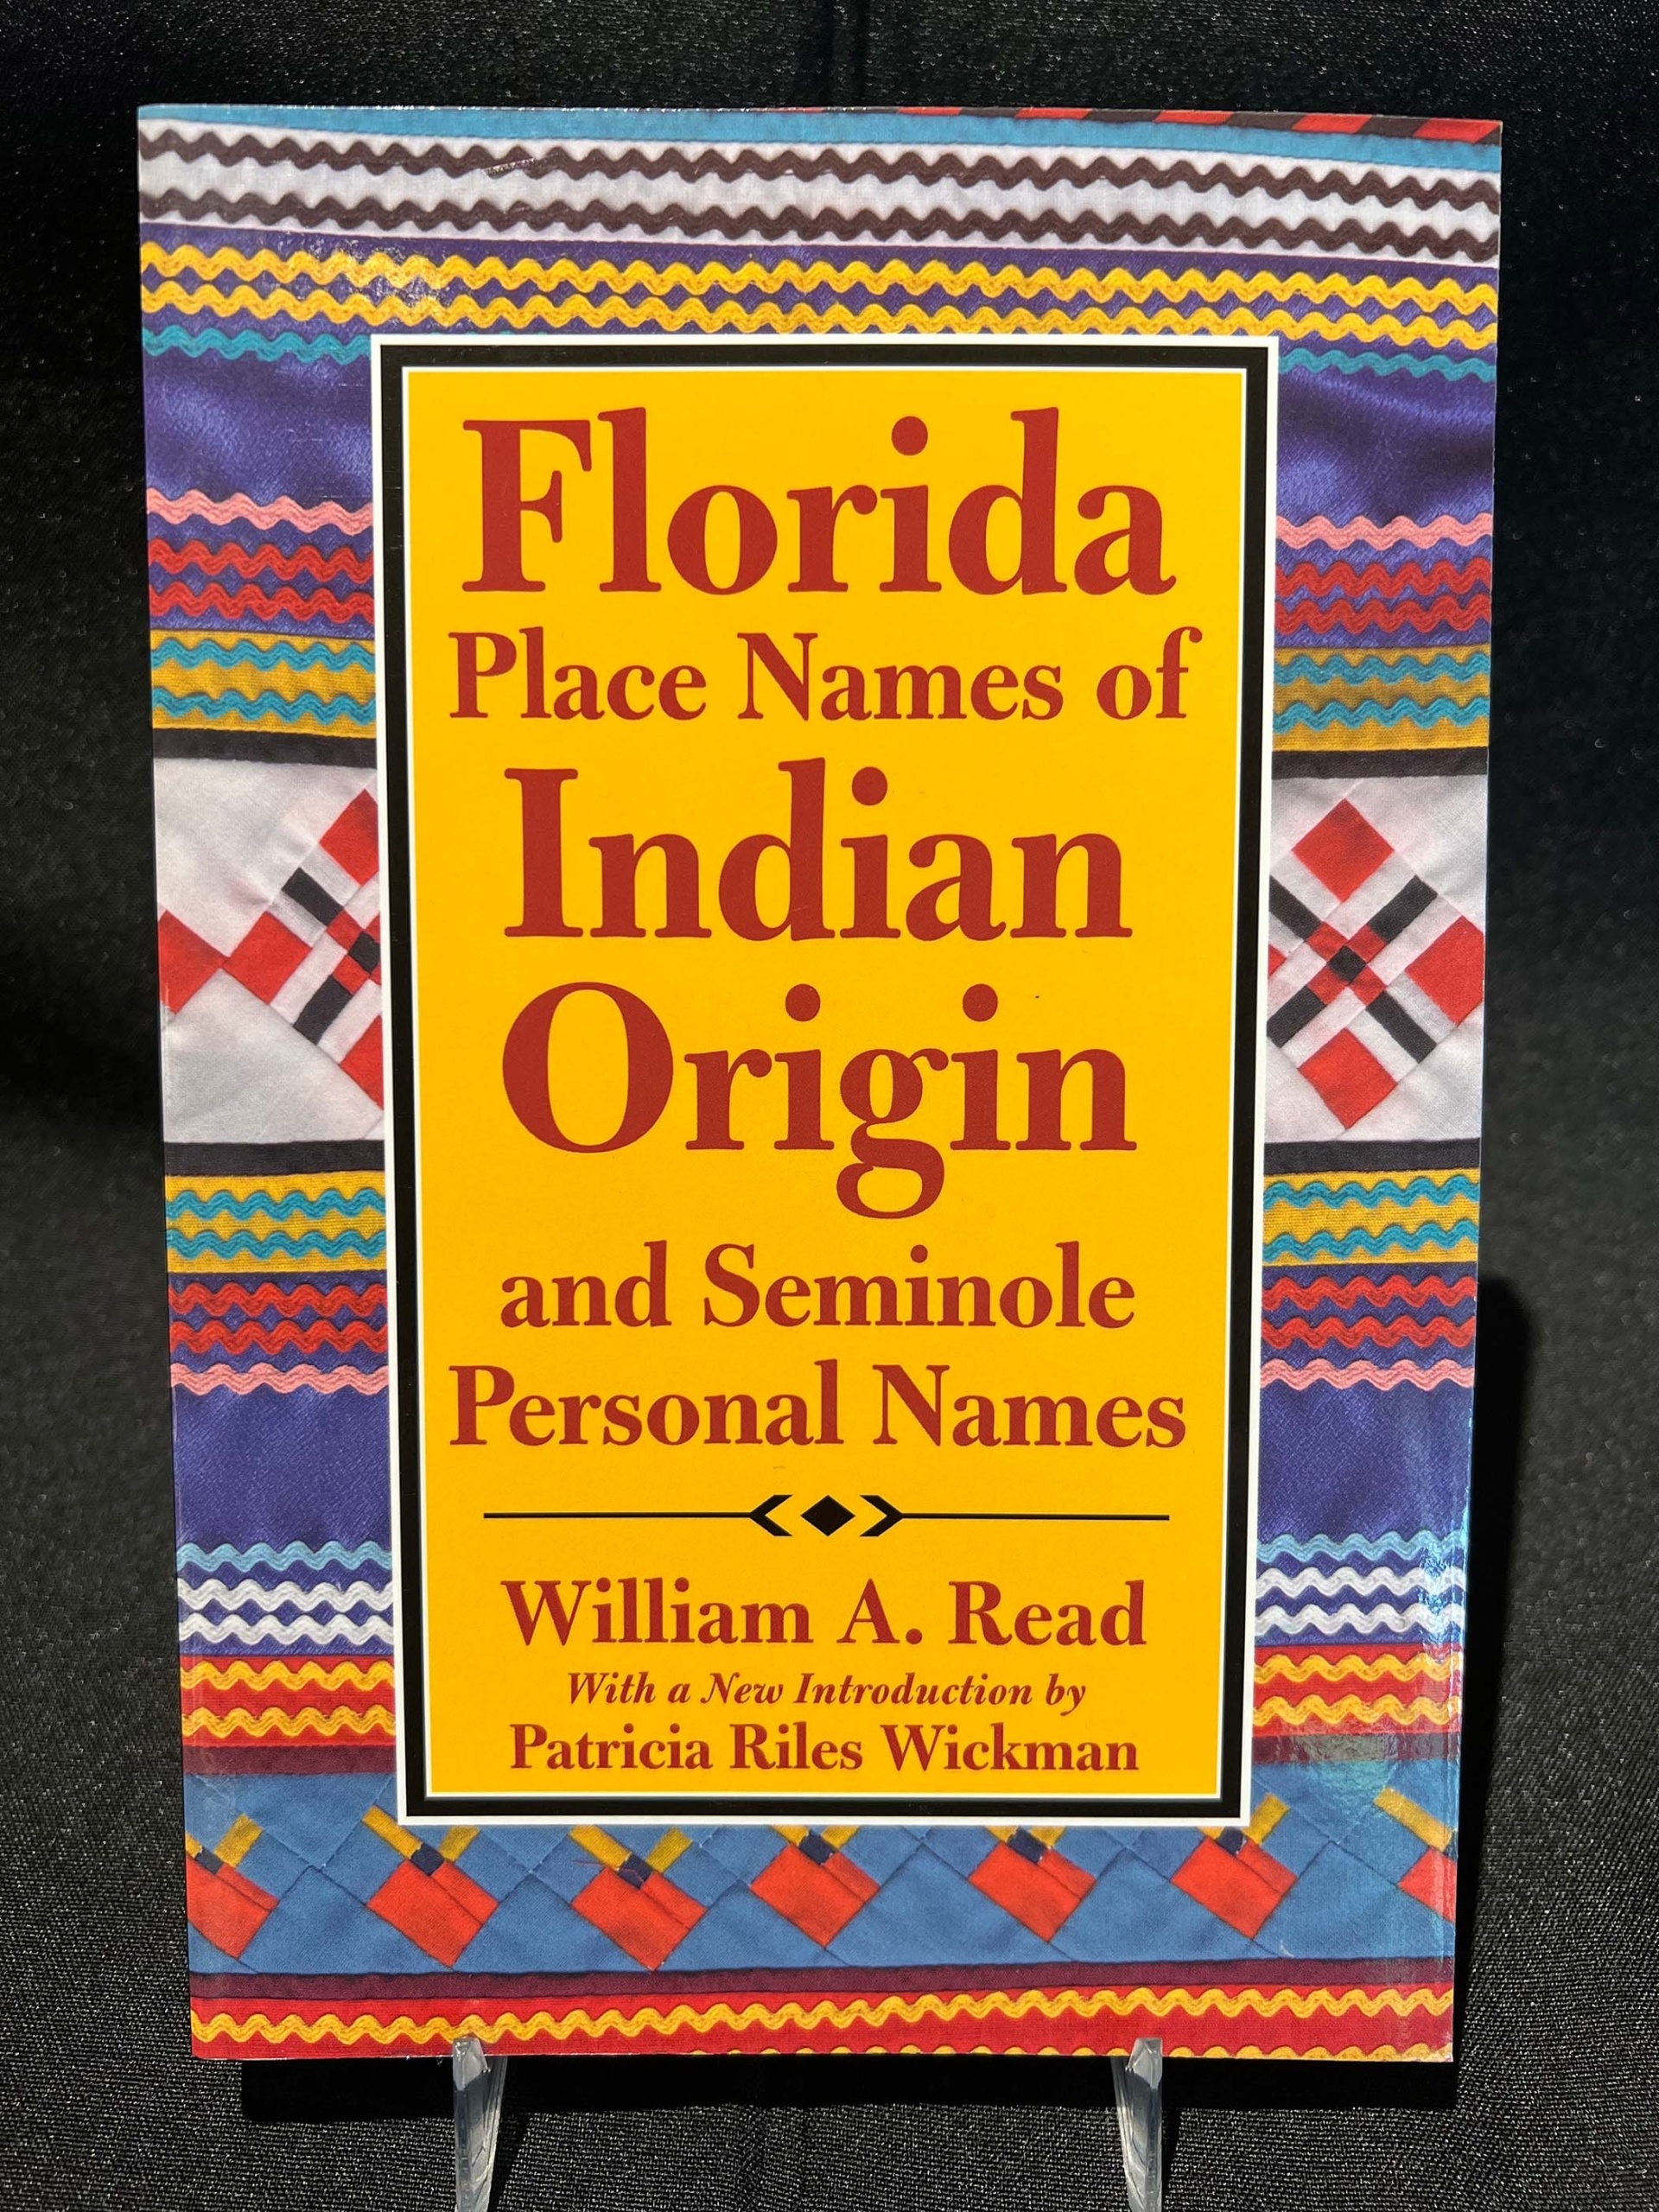 Florida là một địa danh nổi tiếng của Mỹ và Seminole là một bộ tộc có tên gọi độc đáo. Hãy xem ngay hình ảnh này để hiểu rõ hơn về lịch sử và văn hóa của Florida cũng như bộ tộc Seminole.